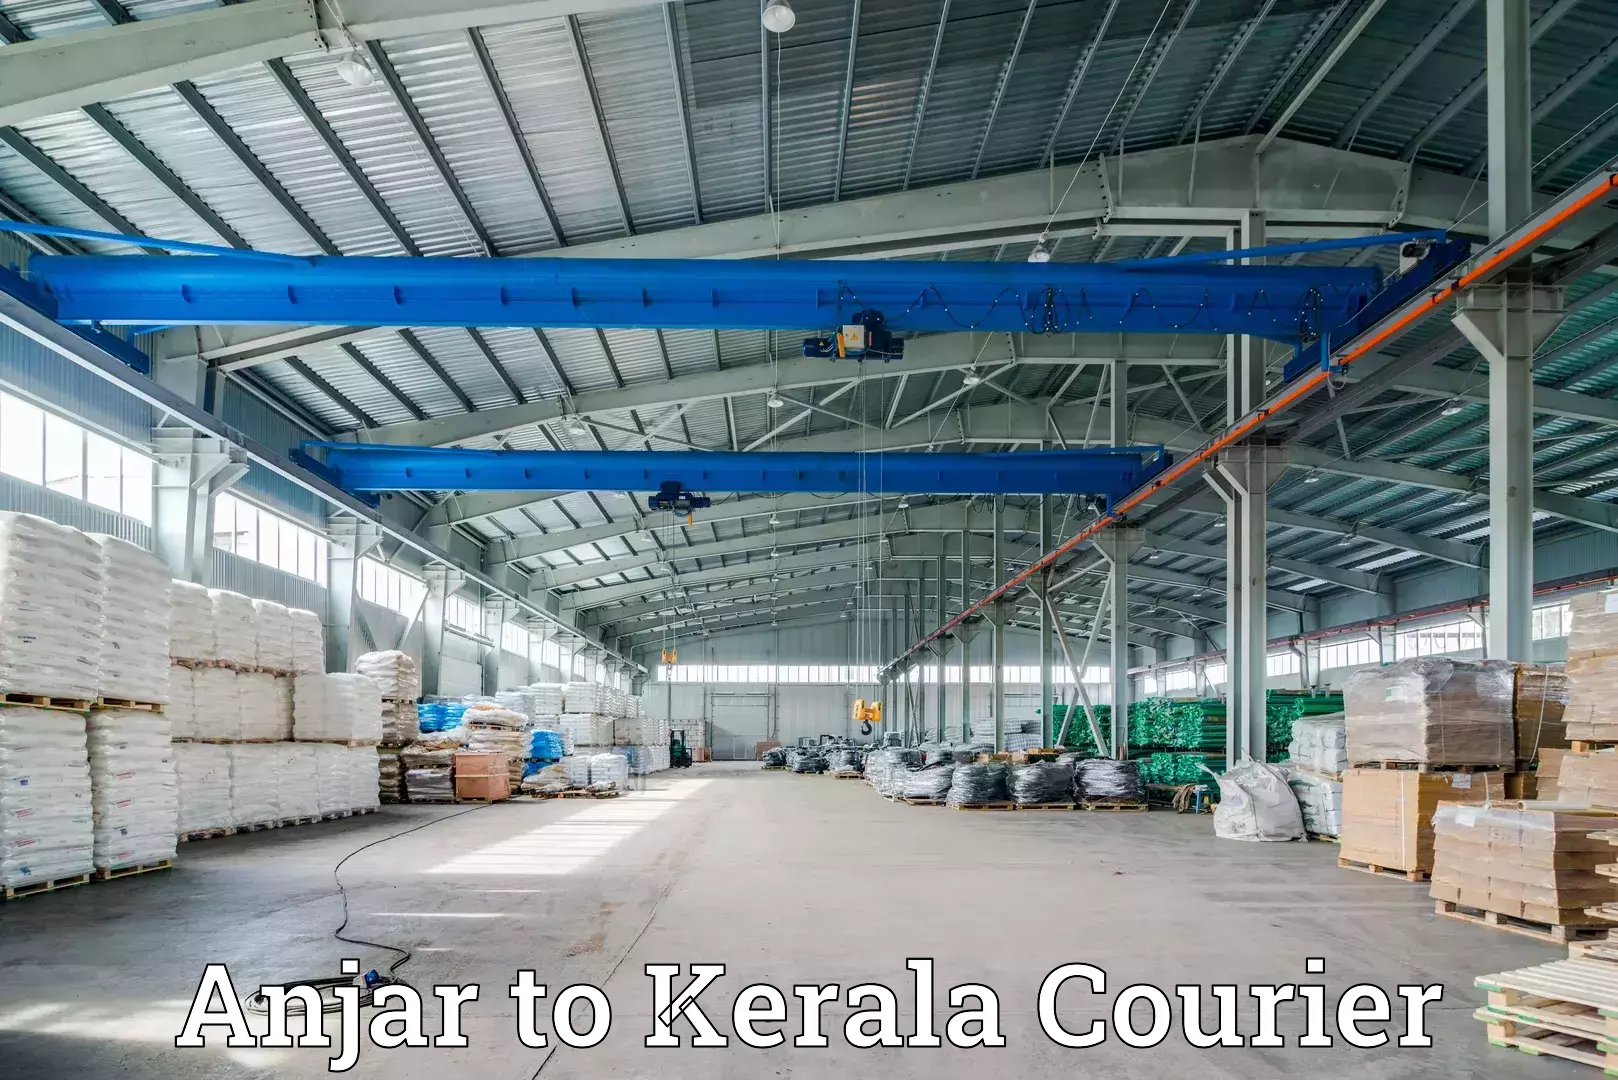 24/7 courier service Anjar to Kerala